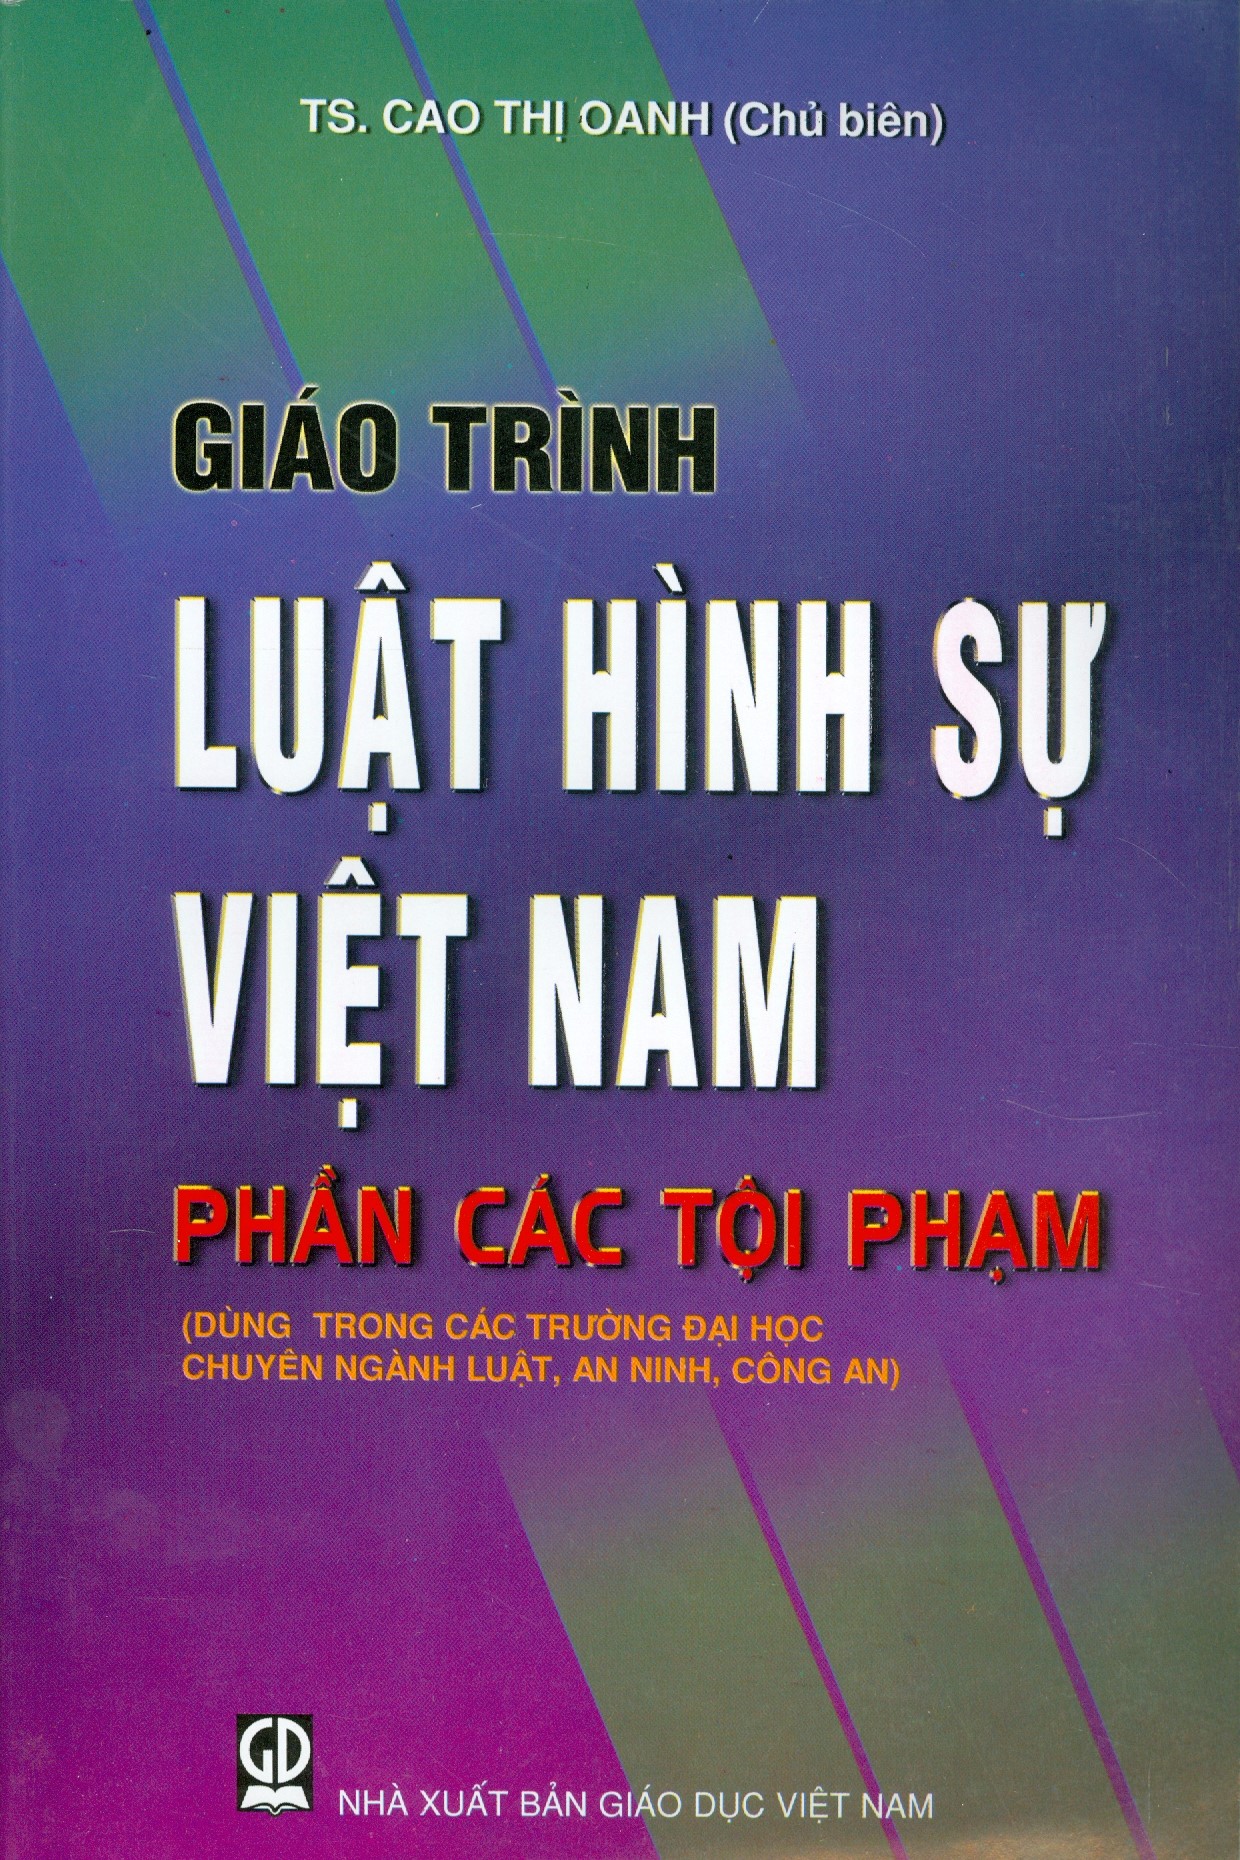 Giáo Trình Luật Hình Sự Việt Nam - Phần Các Tội Phạm (Dùng trong các trường Đại học chuyên ngành Luật, An ninh, Công an)